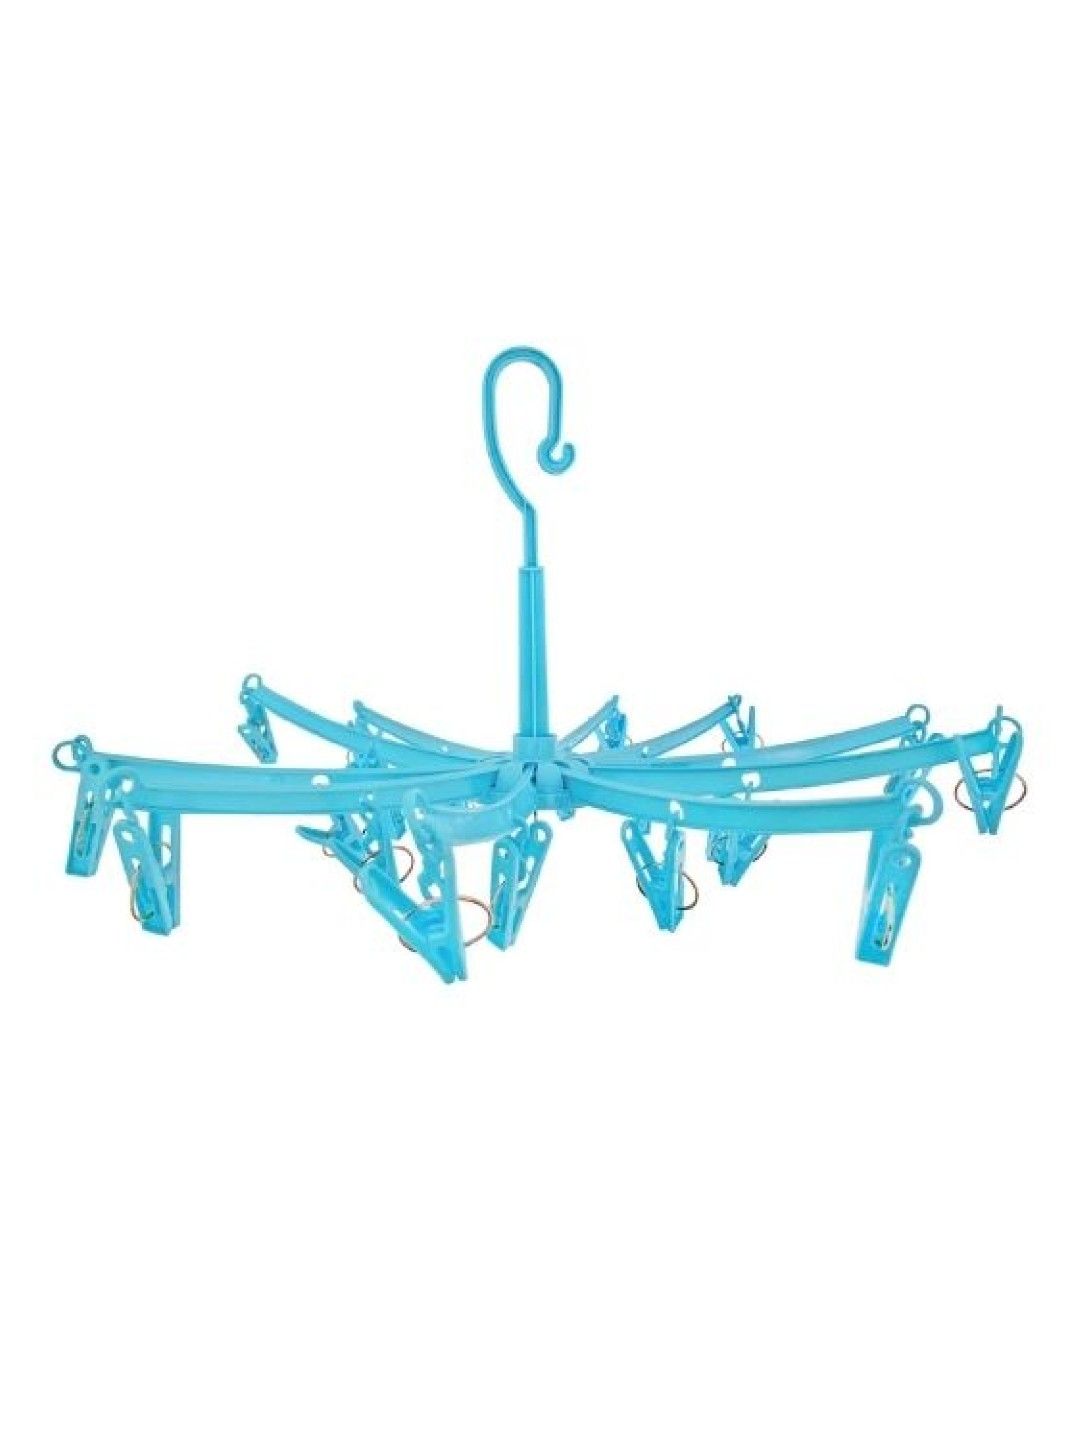 Mimiflo Umbrella Hanger with 20 Clips